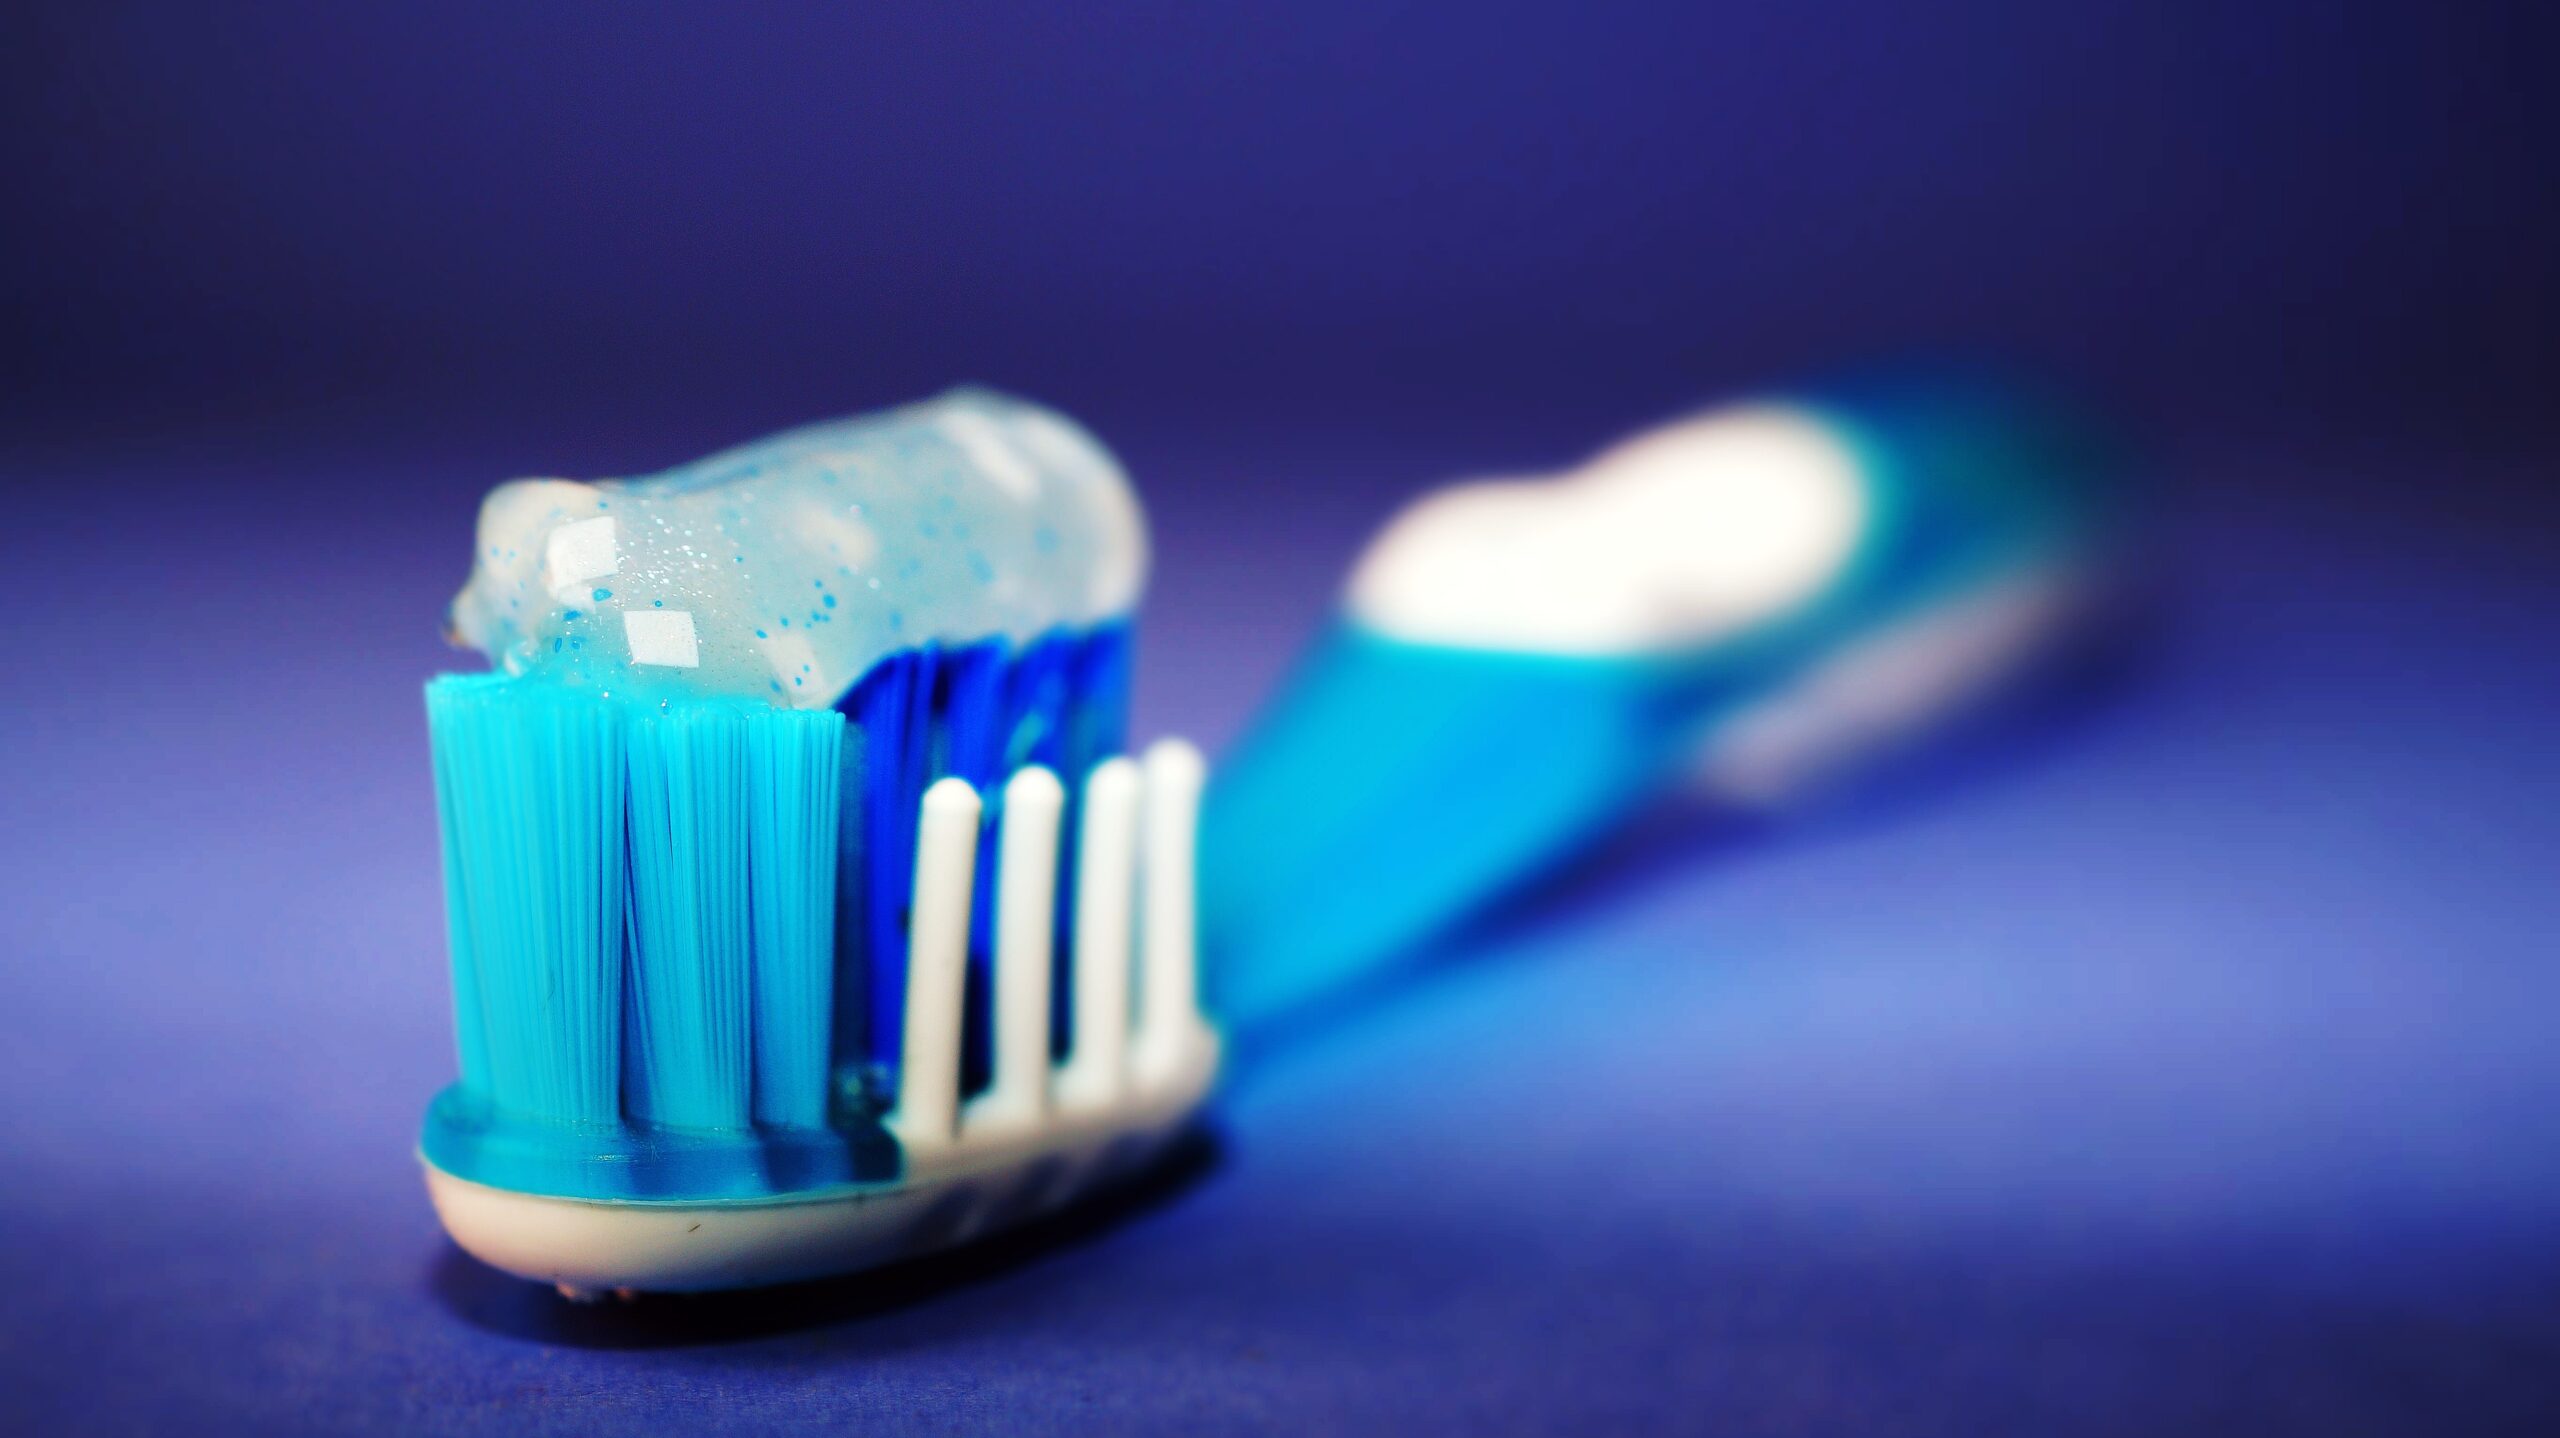 tooth brush for dental hygiene